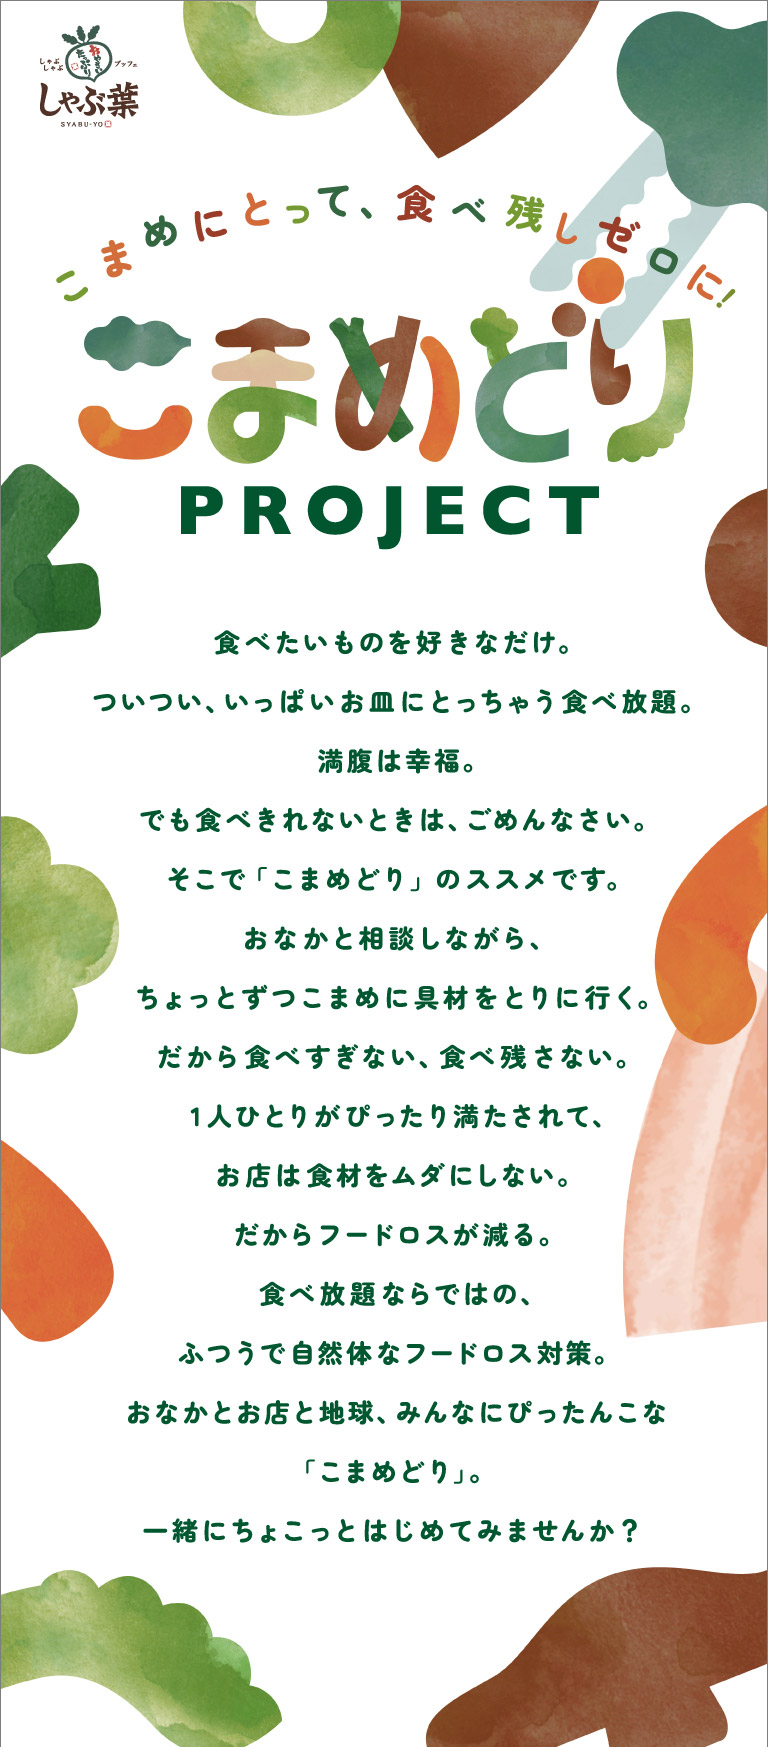 Komamedori Project